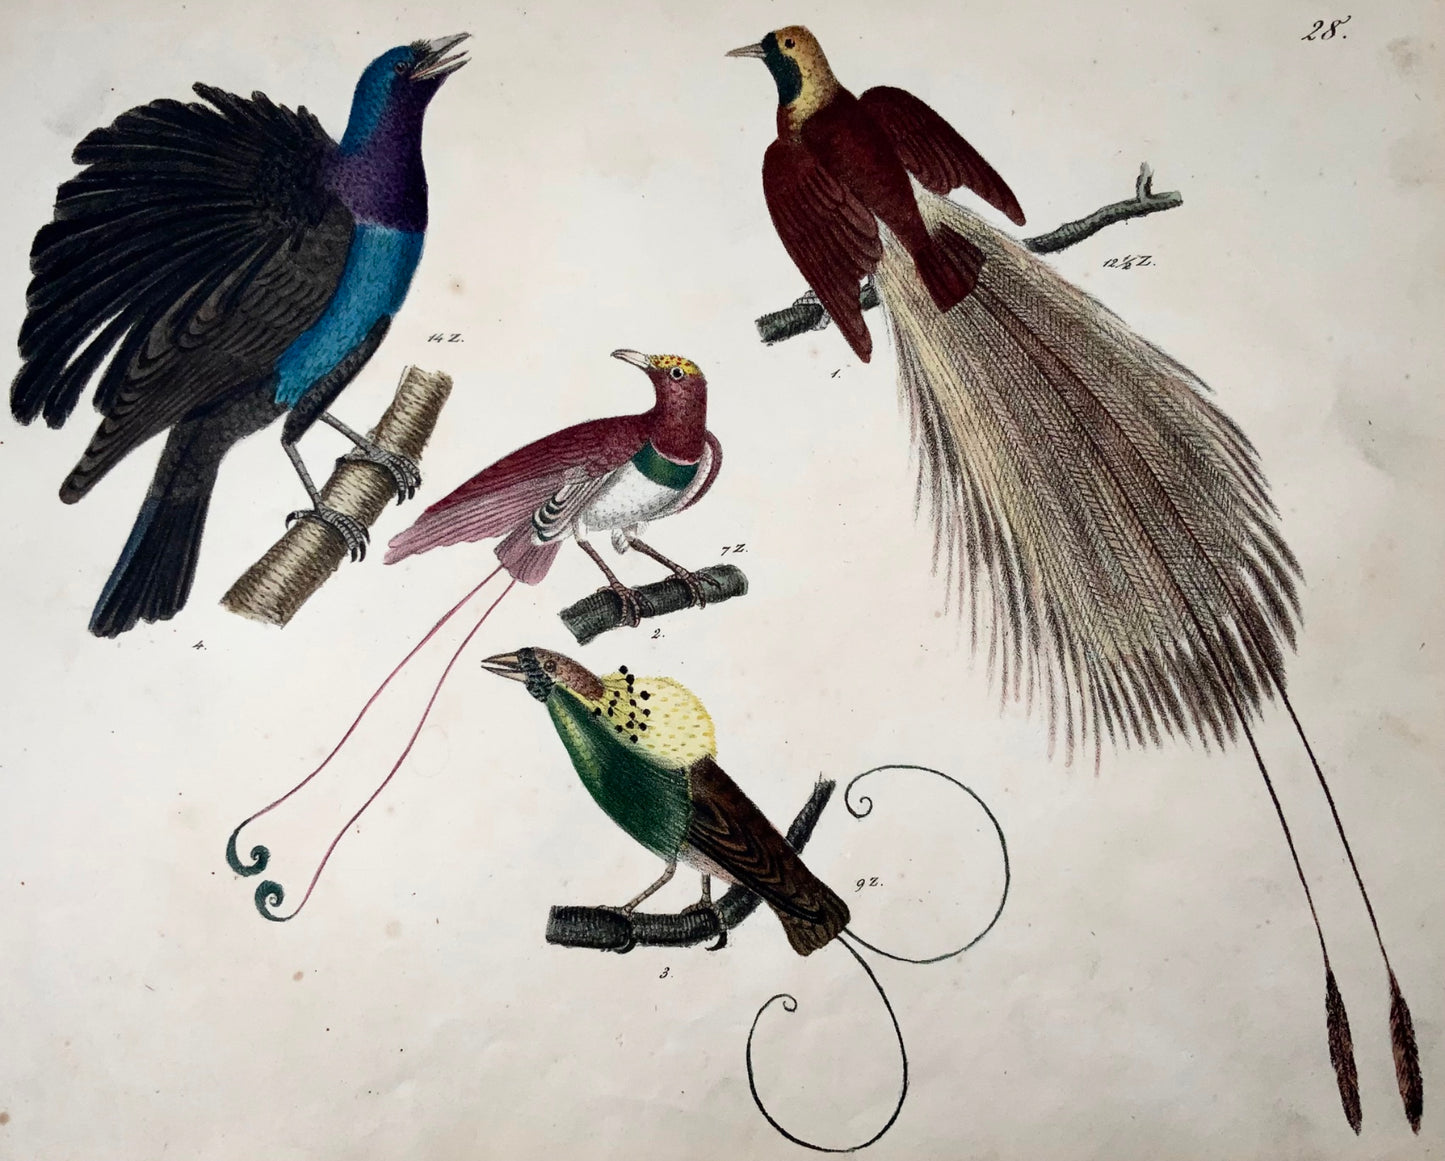 1819 Oiseaux de Paradis, ornithologie, Strack, lithographie à la craie, couleur à la main